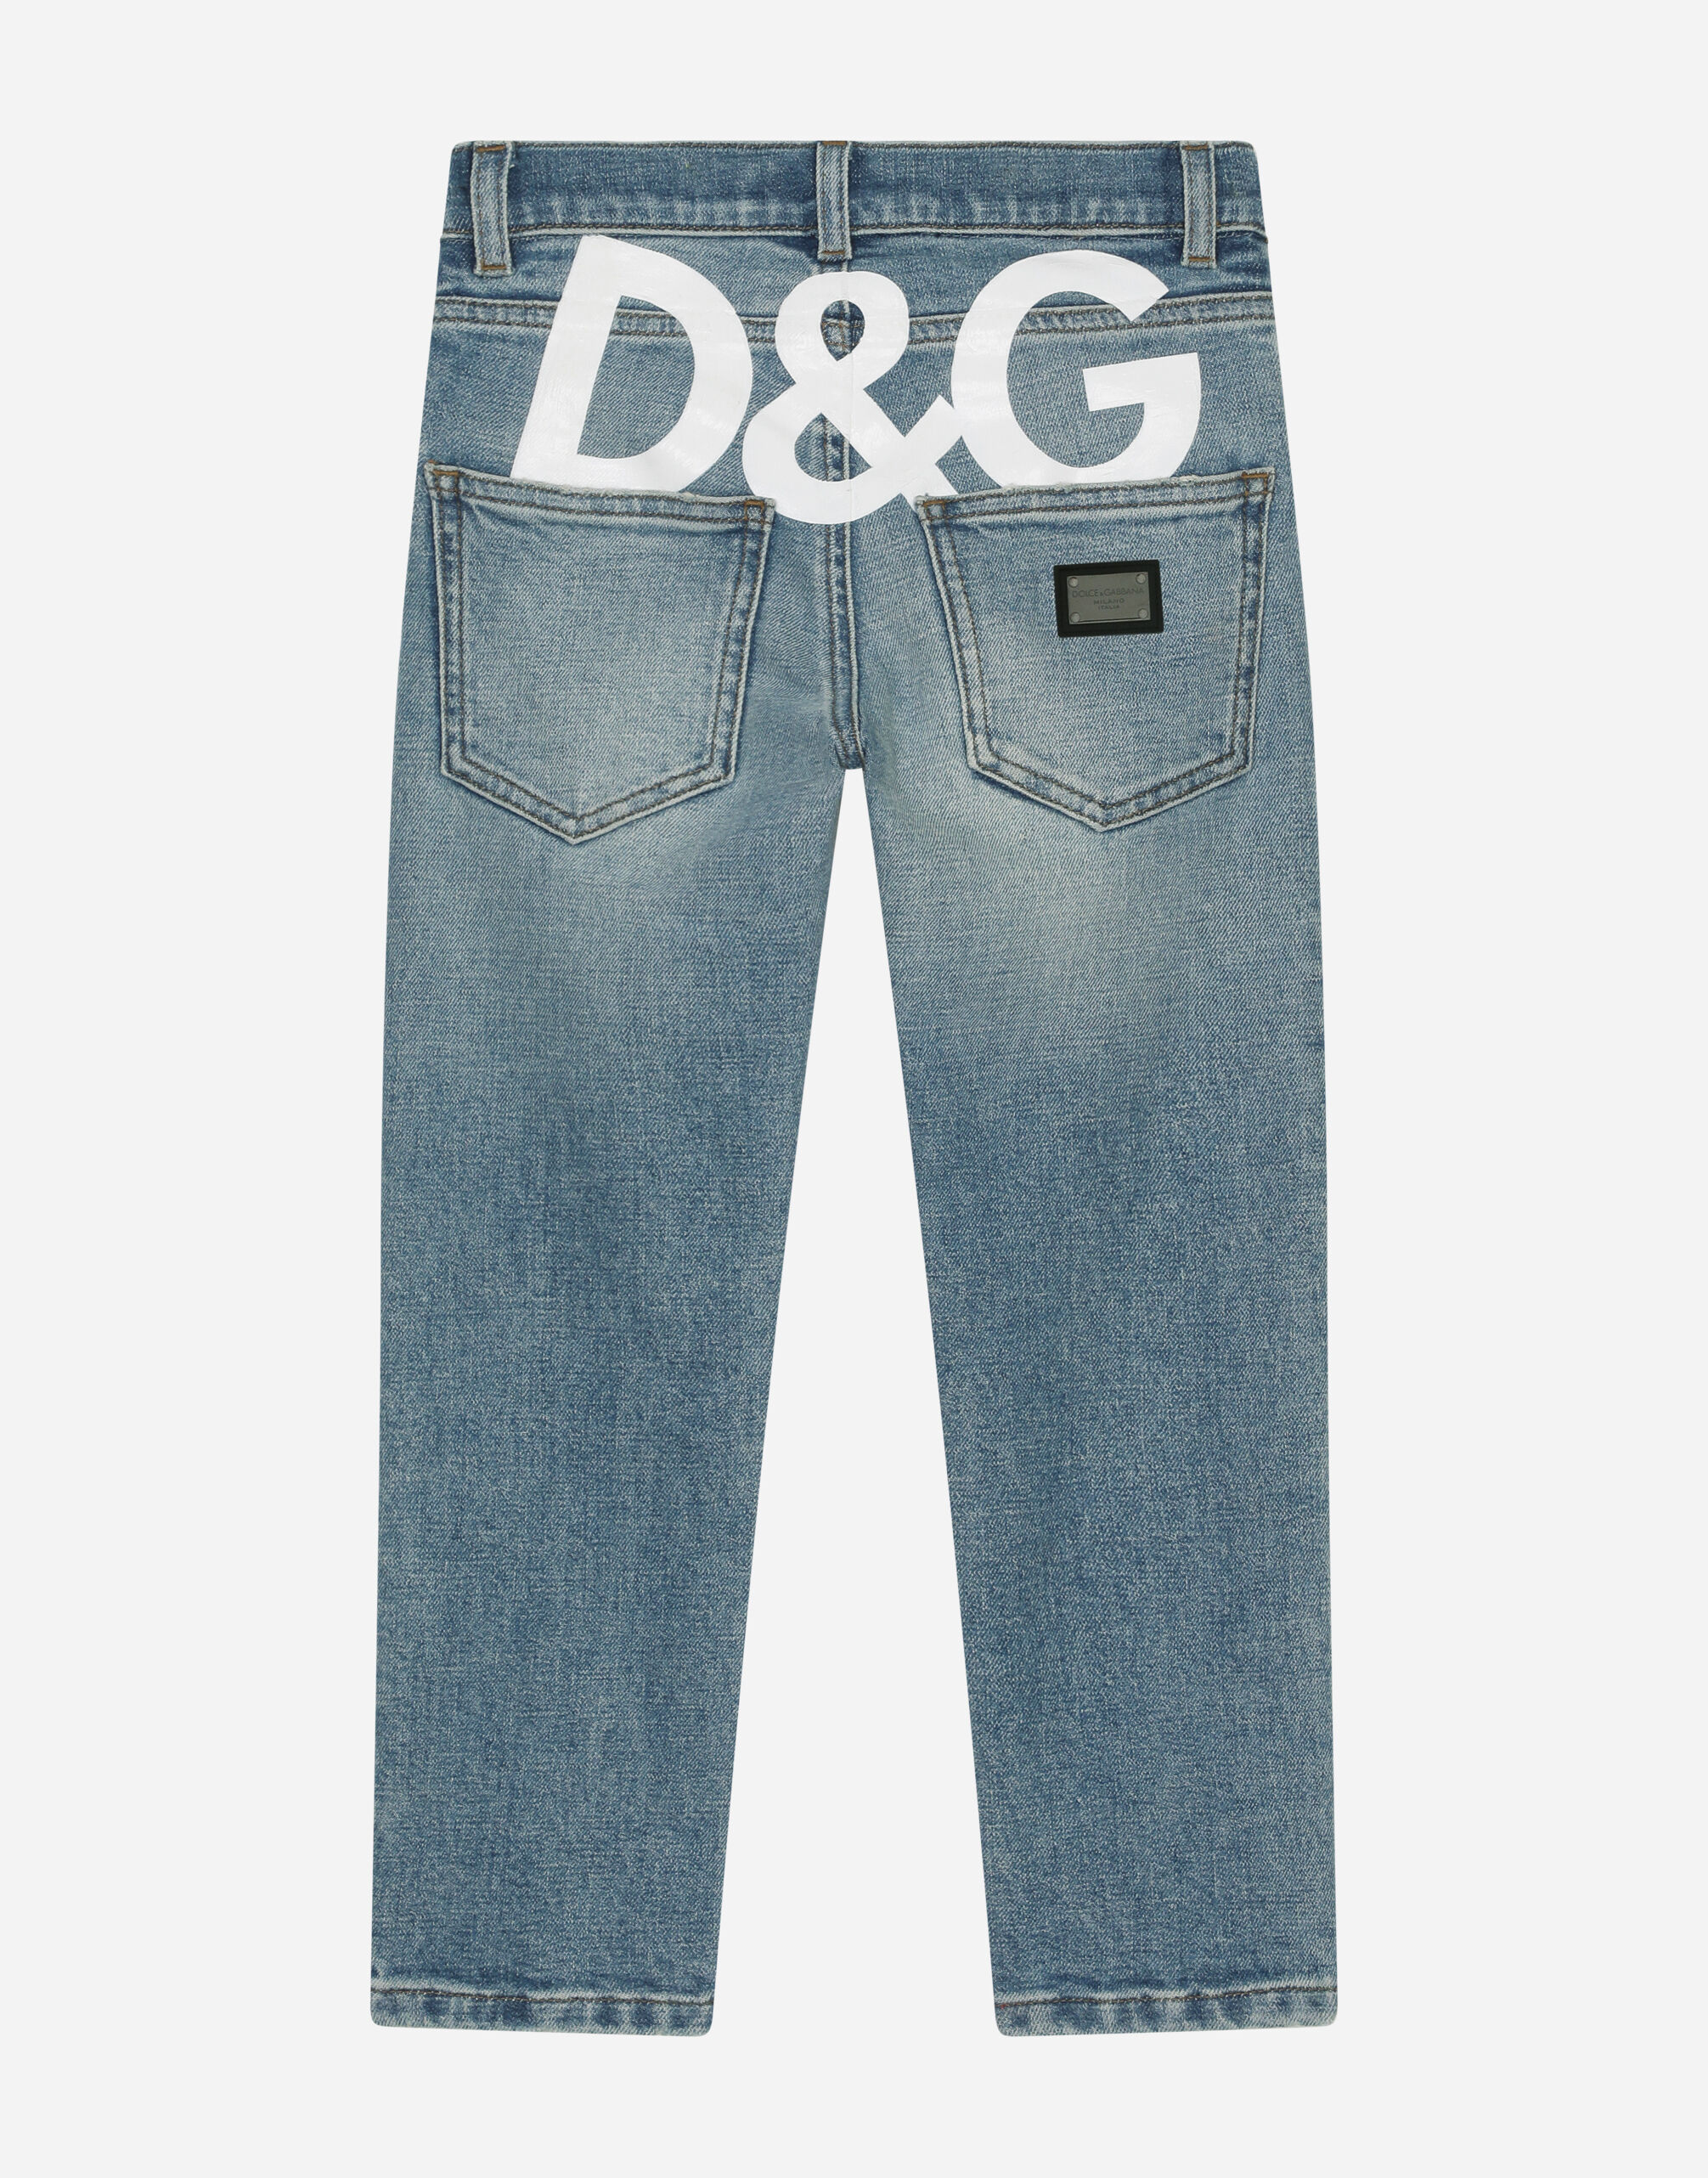 マルチカラーのボーイズ 5-pocket treated stretch denim jeans with 